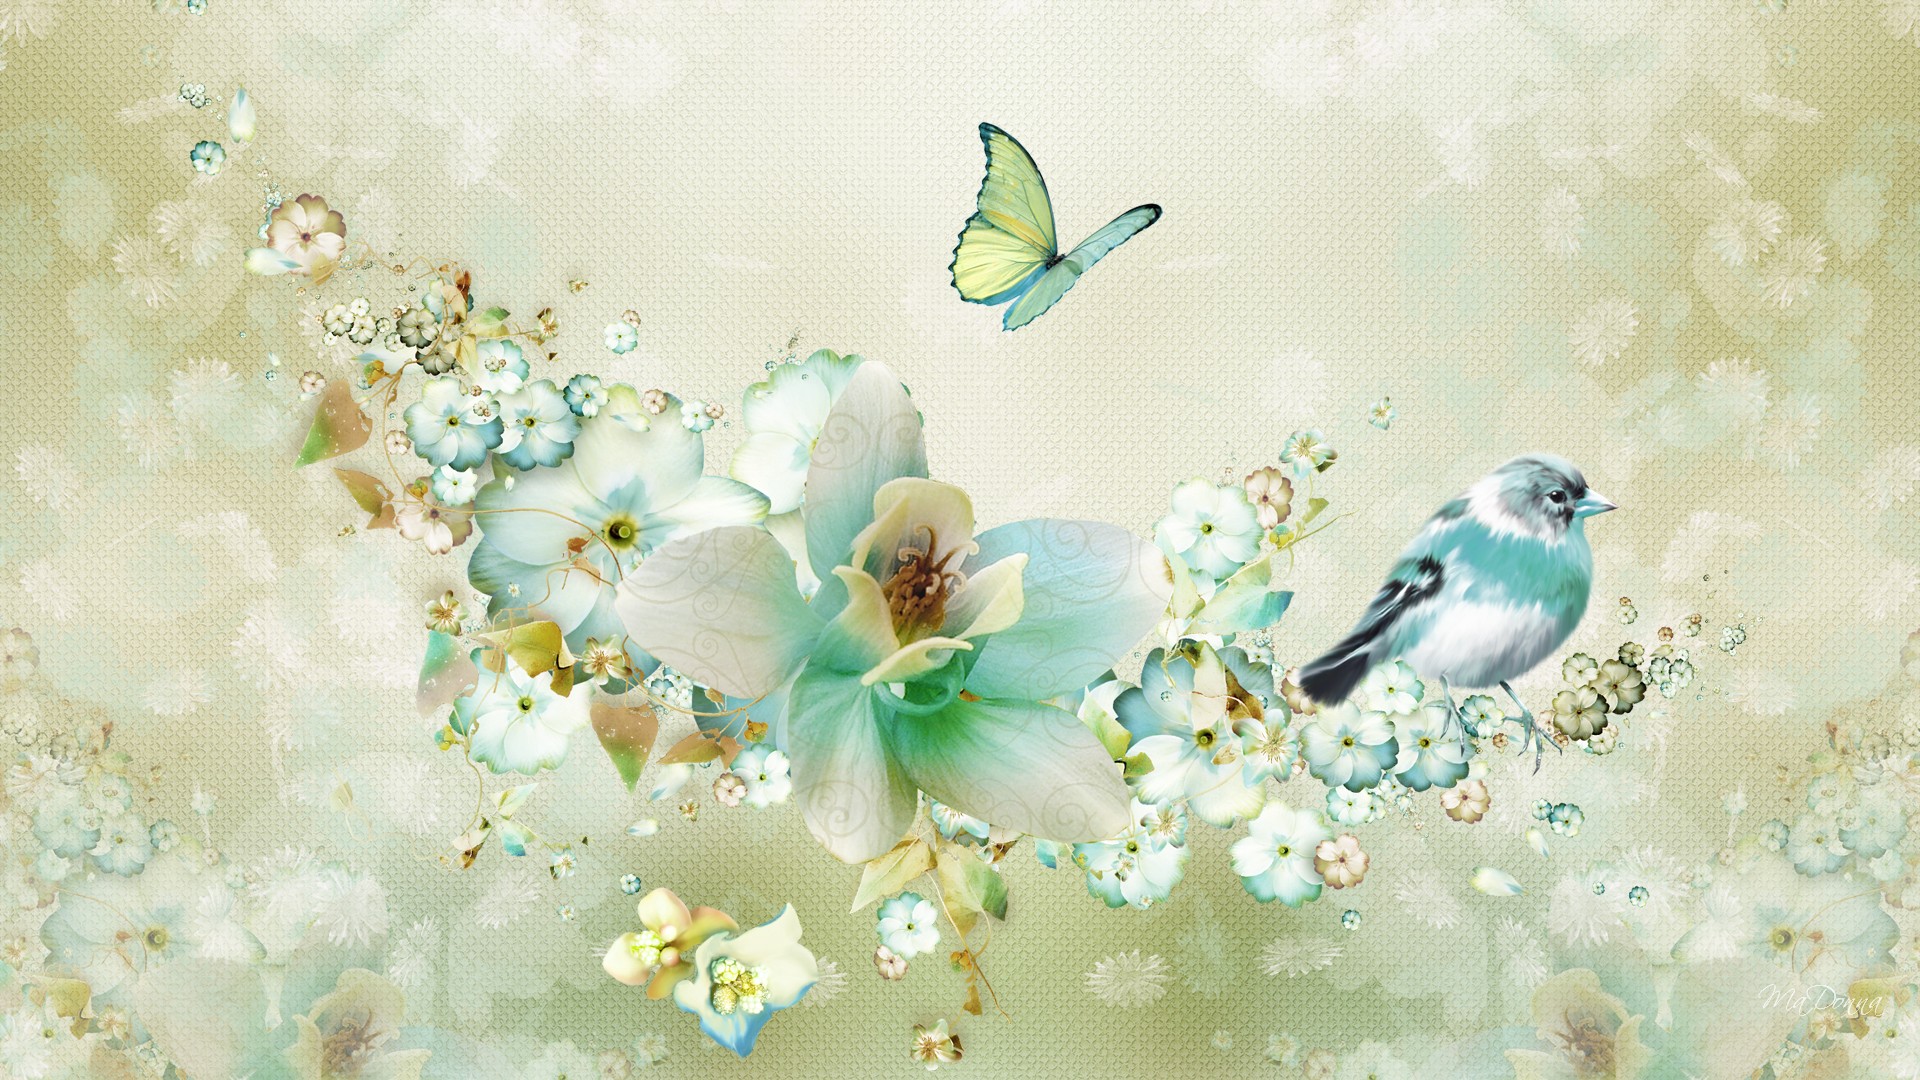 Flowers Birds and Butterfly wallpaper   ForWallpapercom